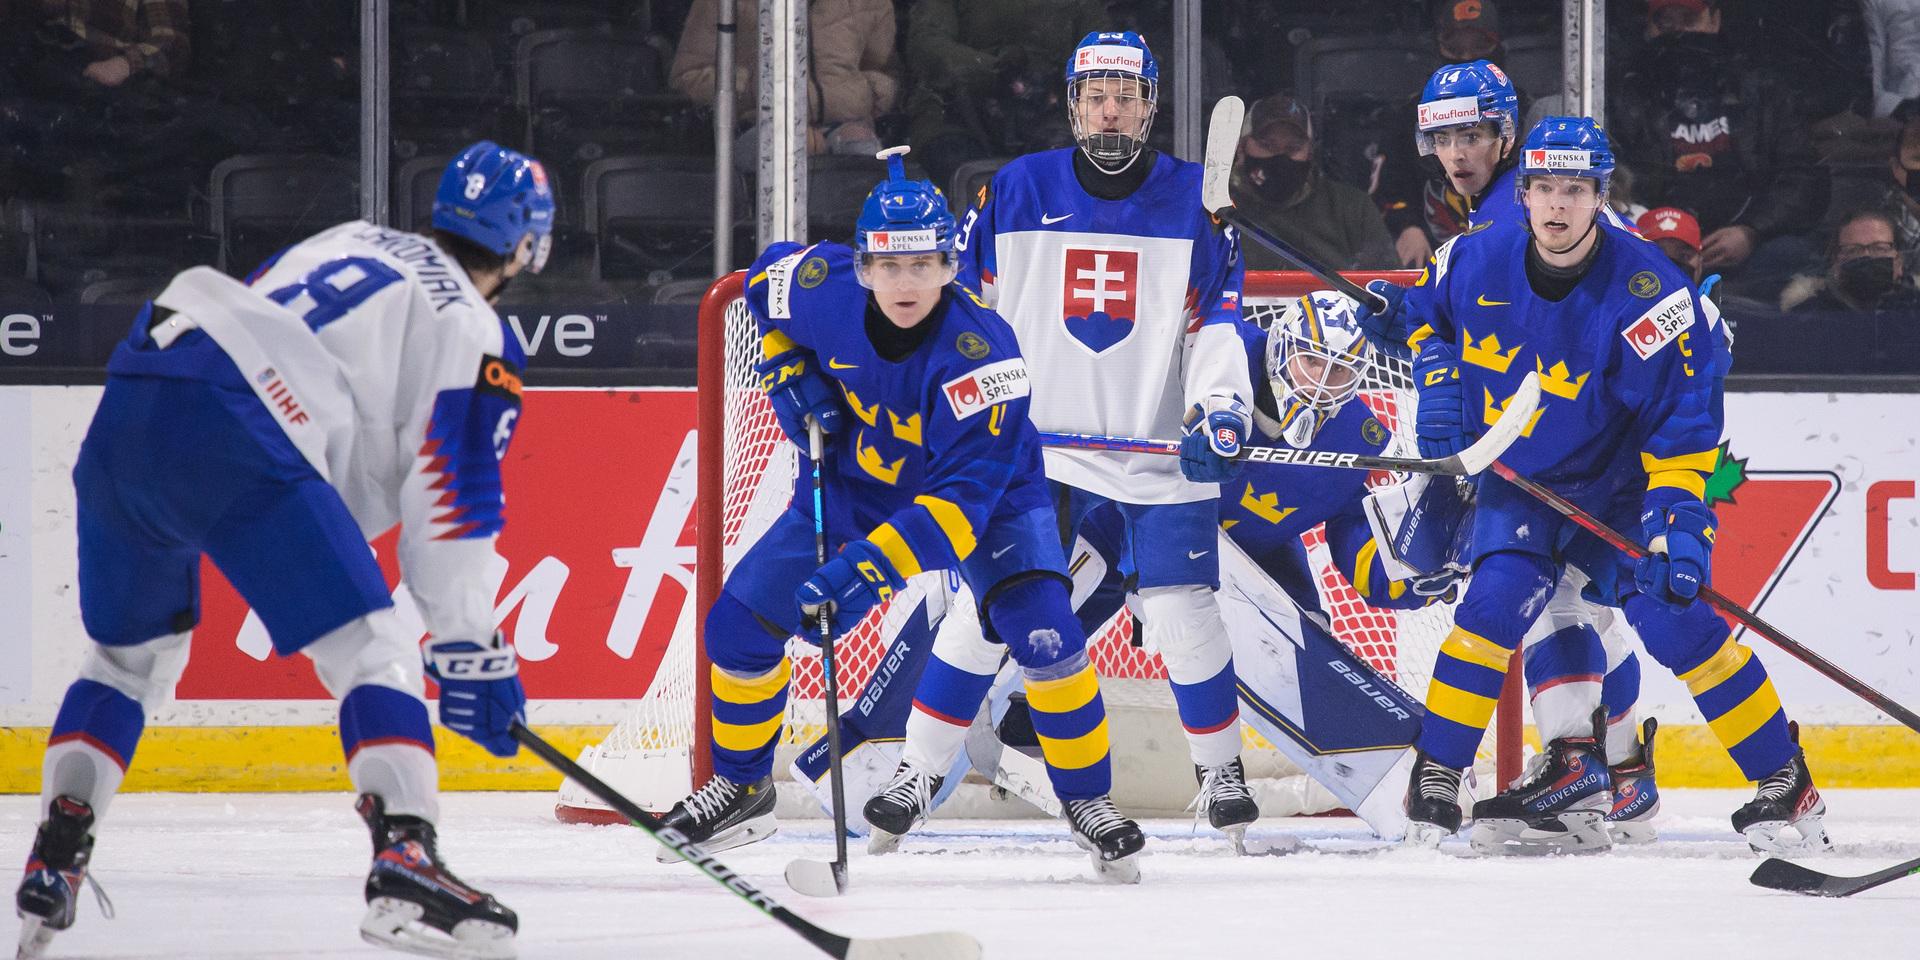 Sveriges match mot Slovakien tidigare i turneringen.